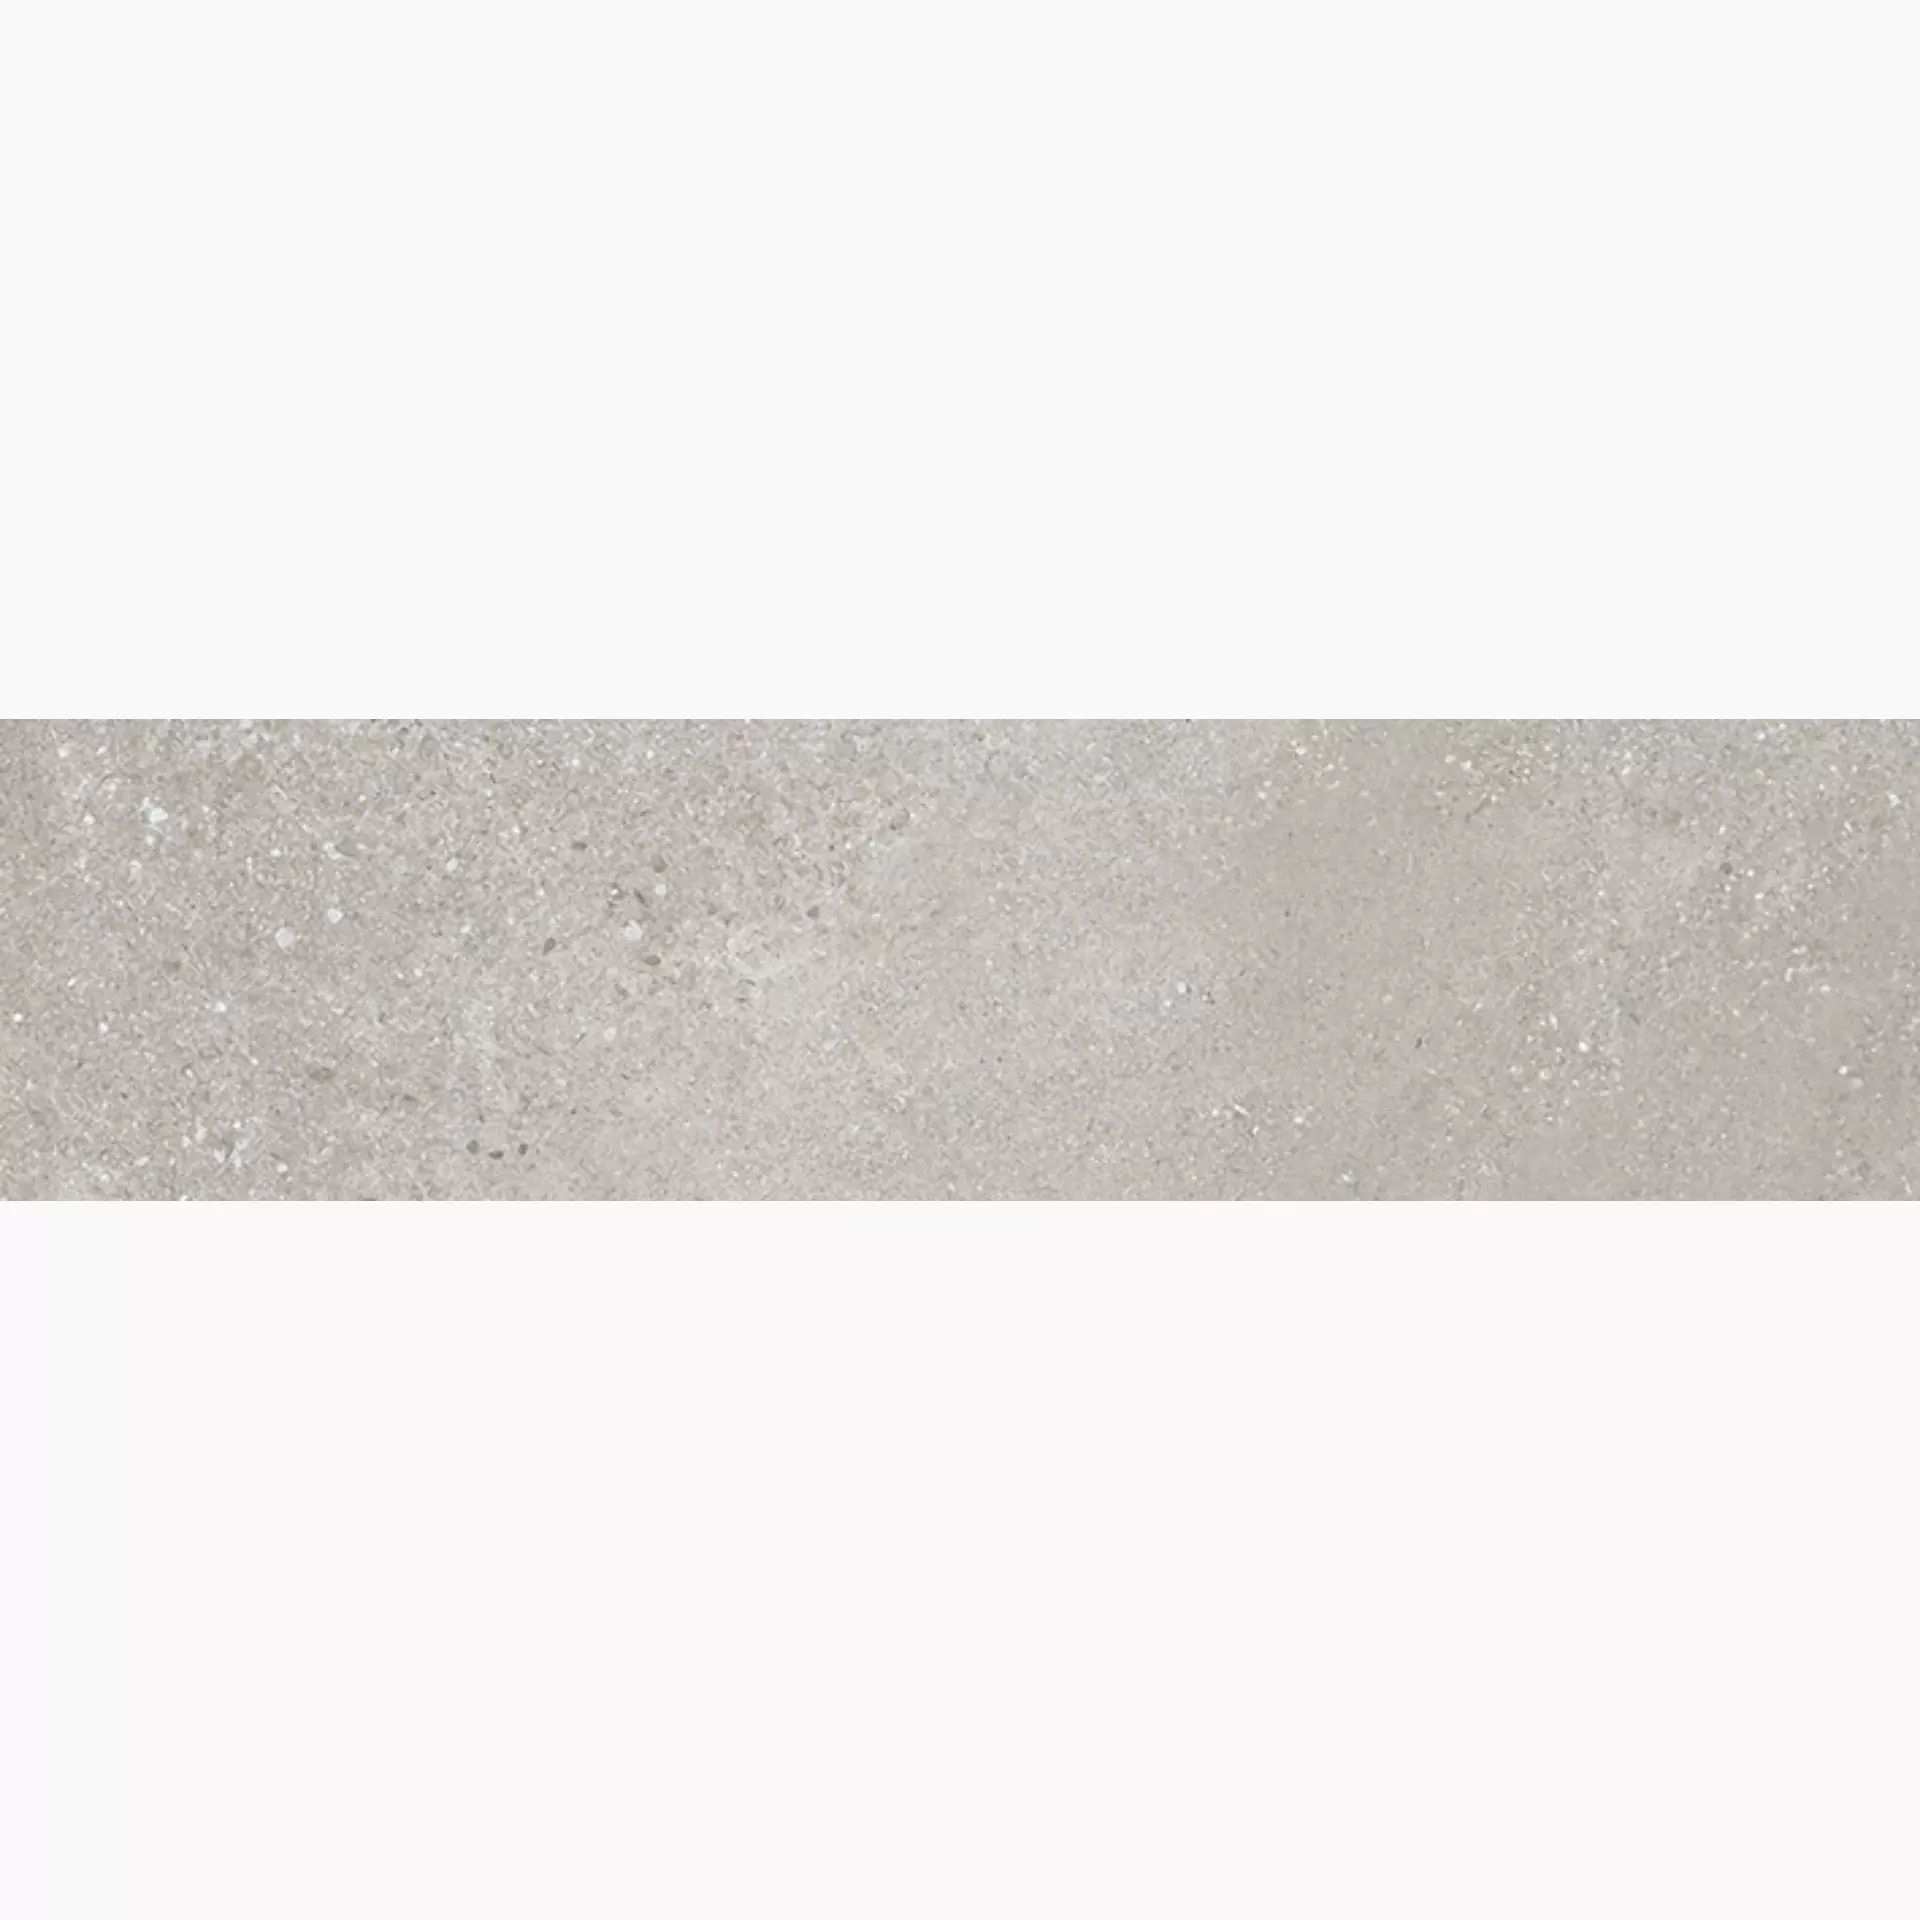 Wandfliese,Bodenfliese Villeroy & Boch Hudson Ash Grey Brushed Ash Grey 2419-SD5B gebuerstet 15x60cm rektifiziert 10mm